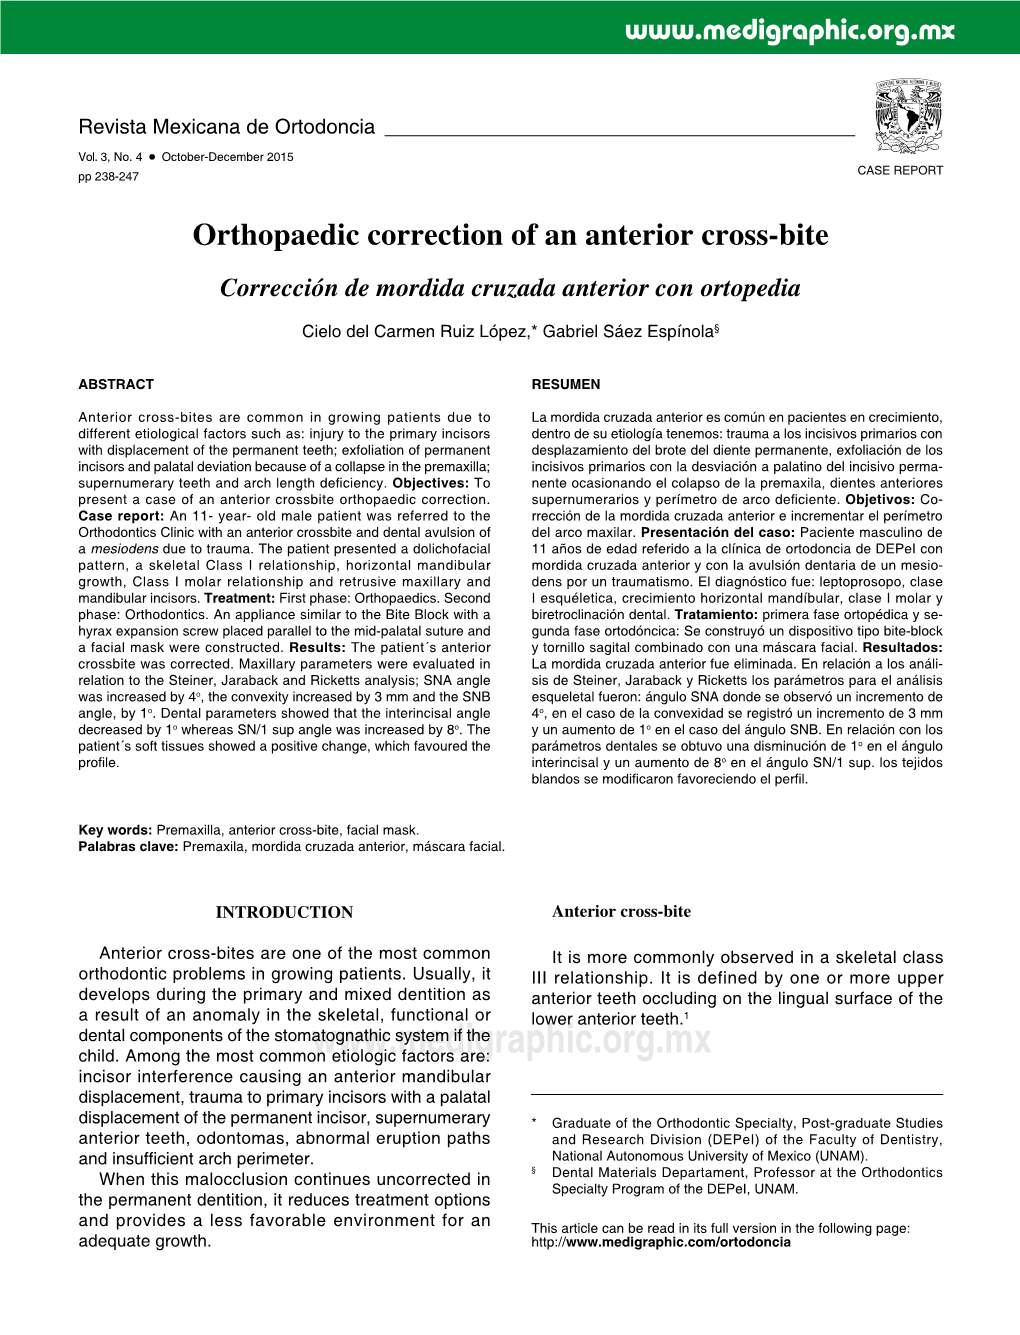 Orthopaedic Correction of an Anterior Cross-Bite Corrección De Mordida Cruzada Anterior Con Ortopedia